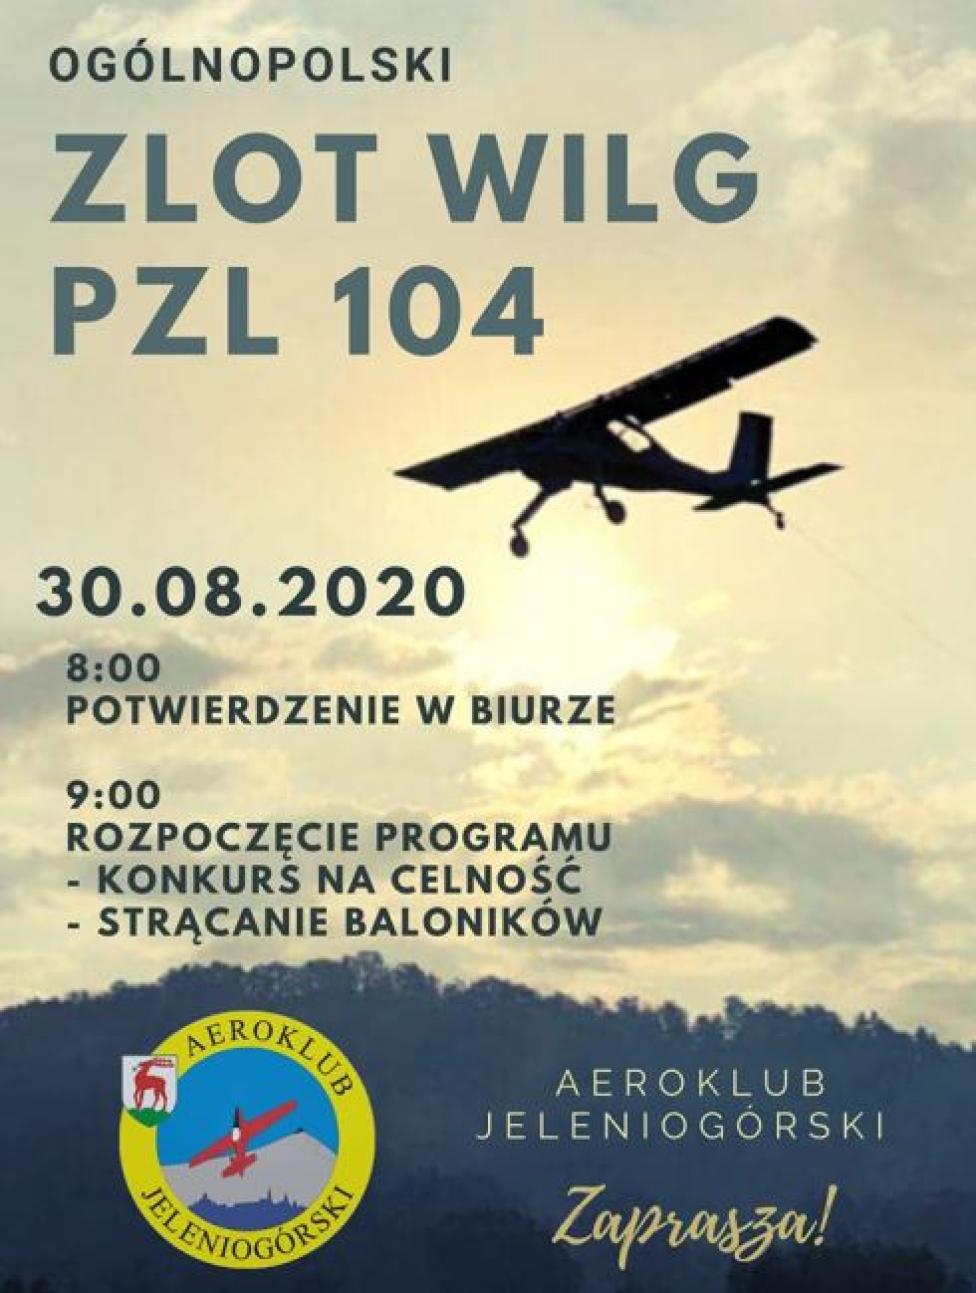 Ogólnopolski Zlot Wilg PZL-104 (fot. Aeroklub Jeleniogórski)